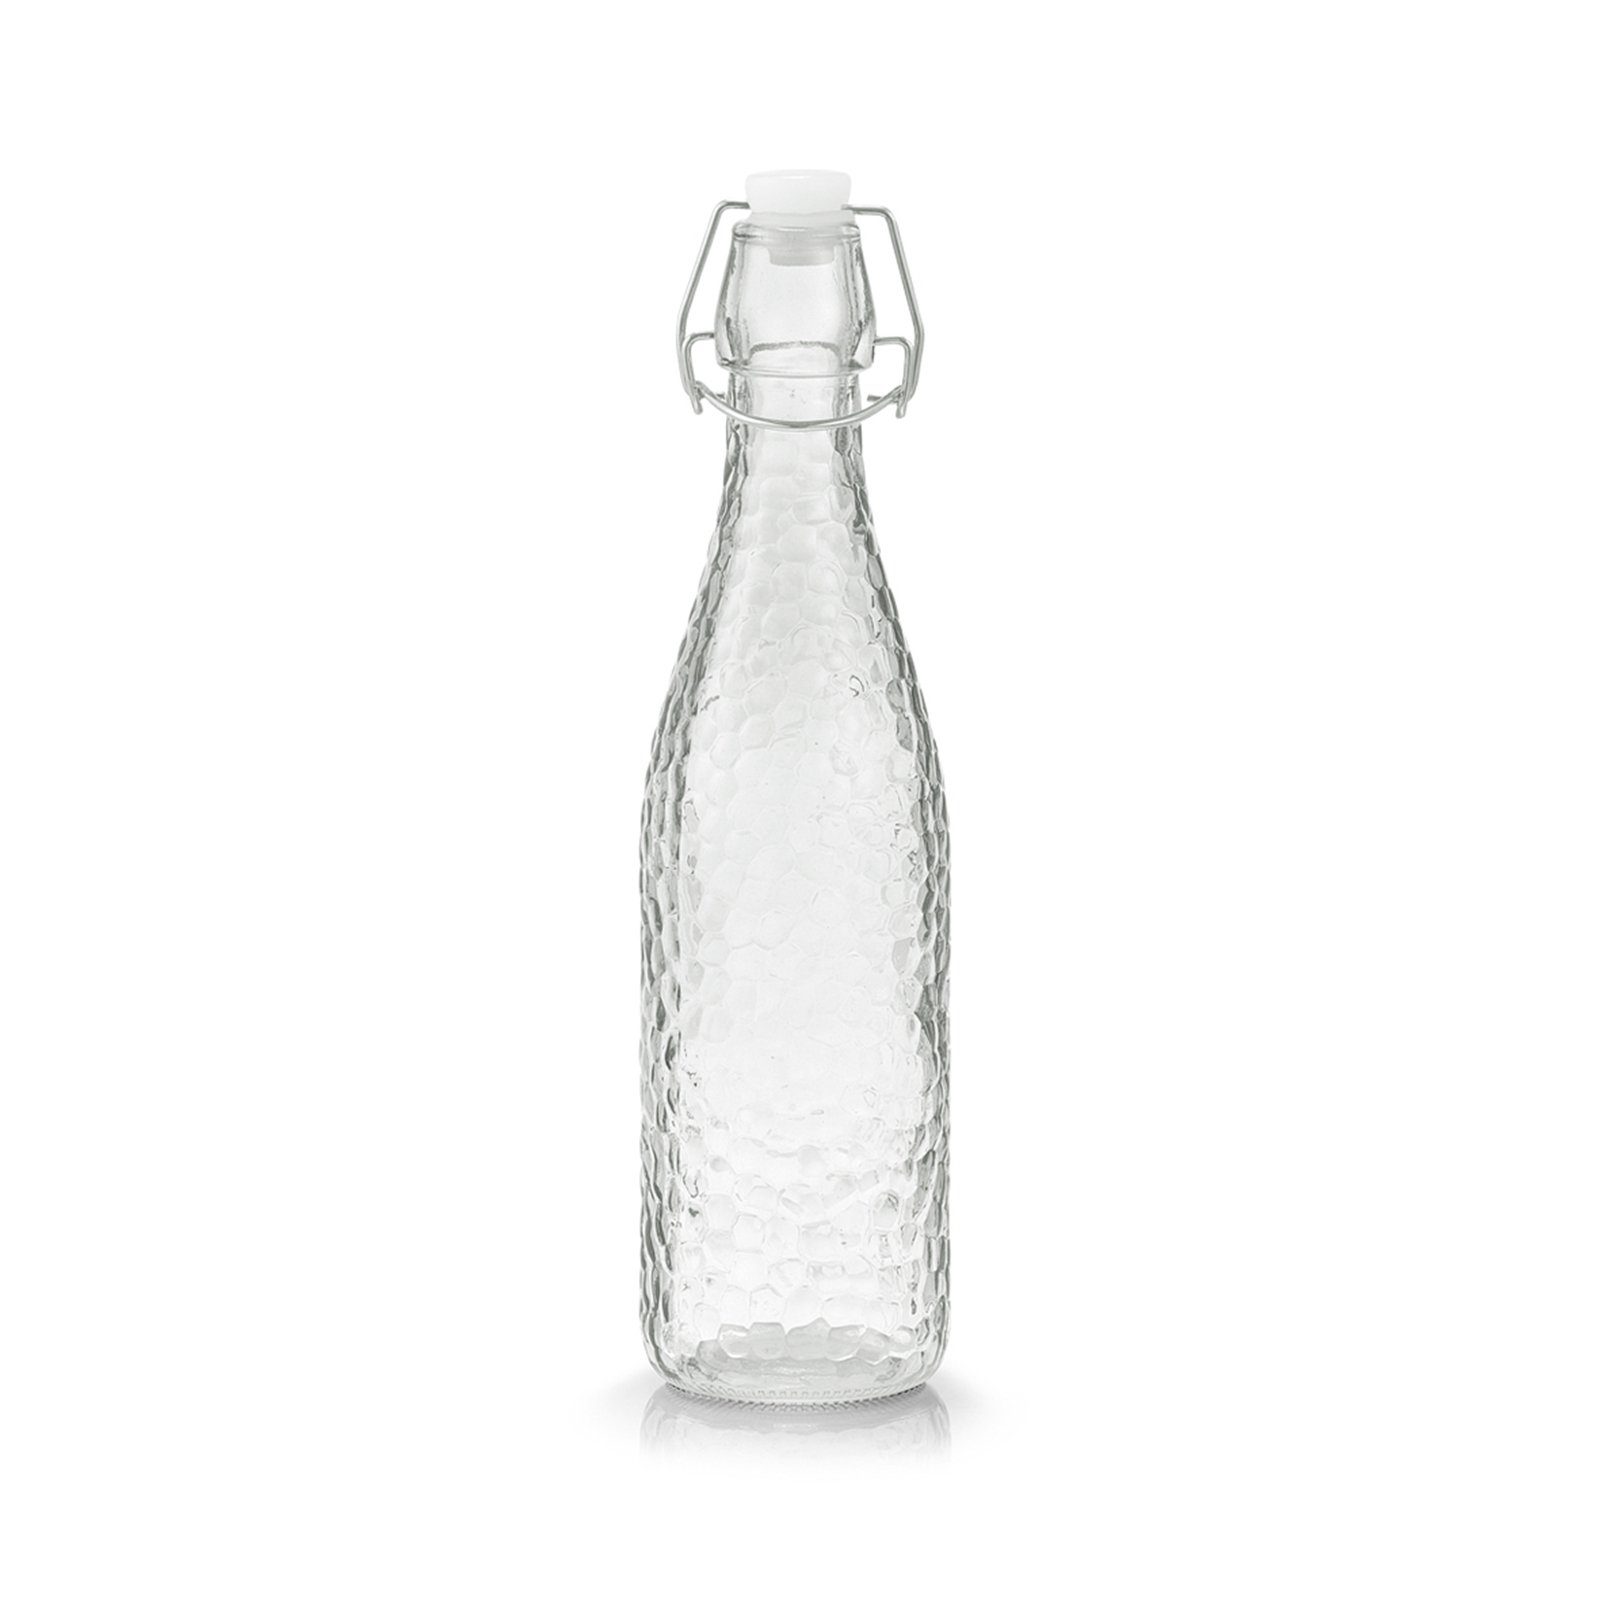 Neuetischkultur Glas Vorratsglas transparent mit Glasflasche Bügelverschluss,